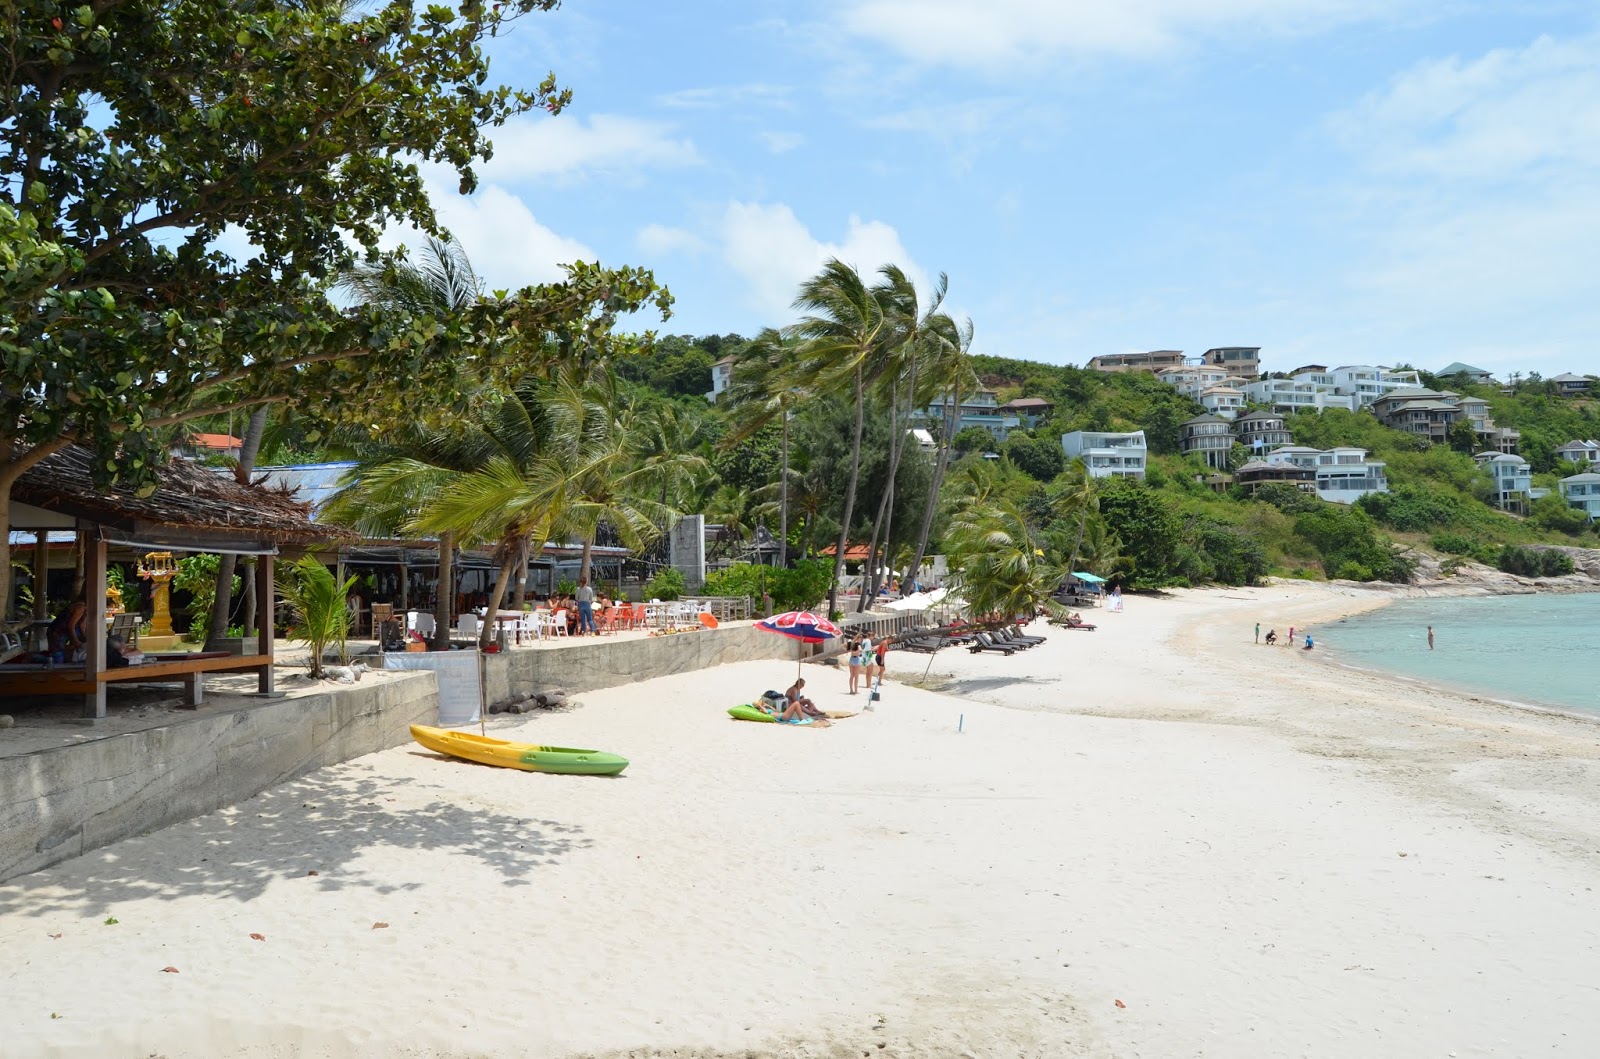 Φωτογραφία του Thongson Bay beach μερικά μέρη του ξενοδοχείου